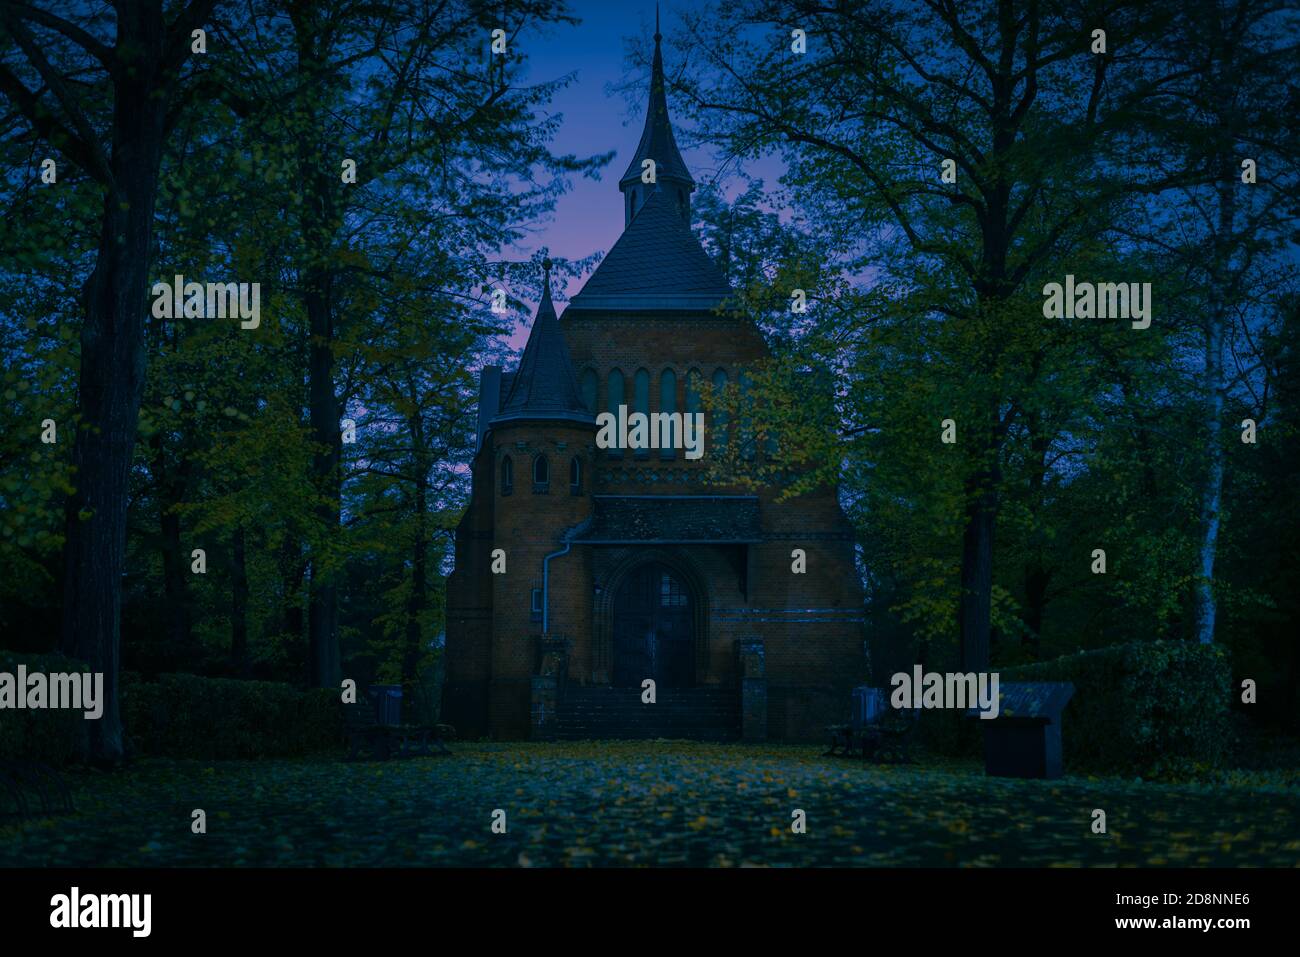 Cimetière chapelle de nuit, arbres d'automne, sinistre chapelle sur un Cemetry de nuit, couleurs abstraites, coloré, artful Banque D'Images